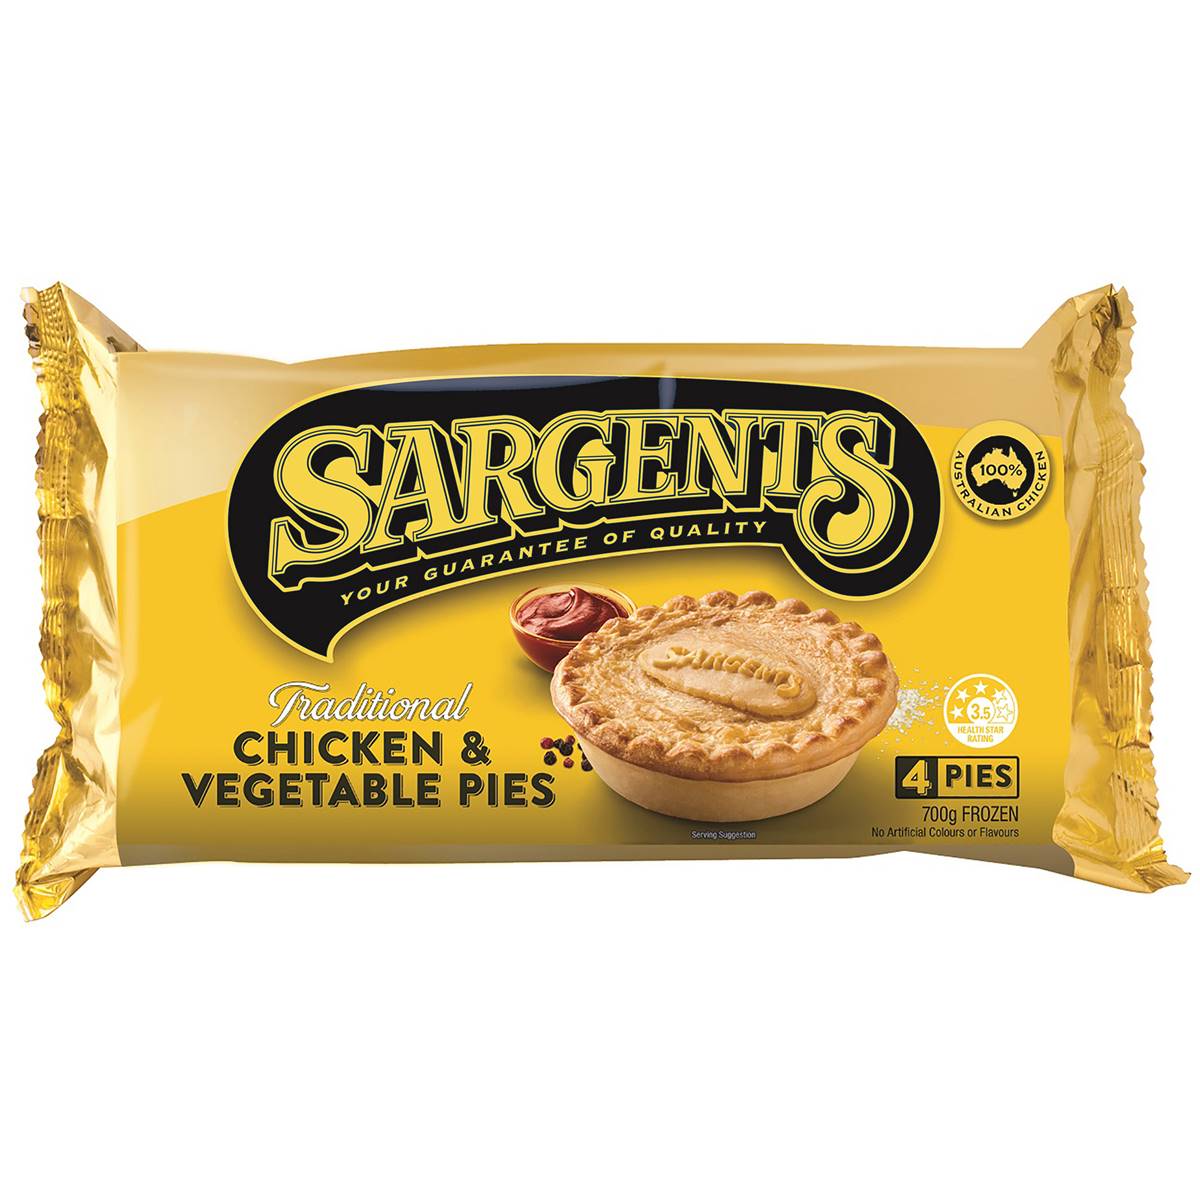 Calories in Sargents Pies Chicken & Vegetable